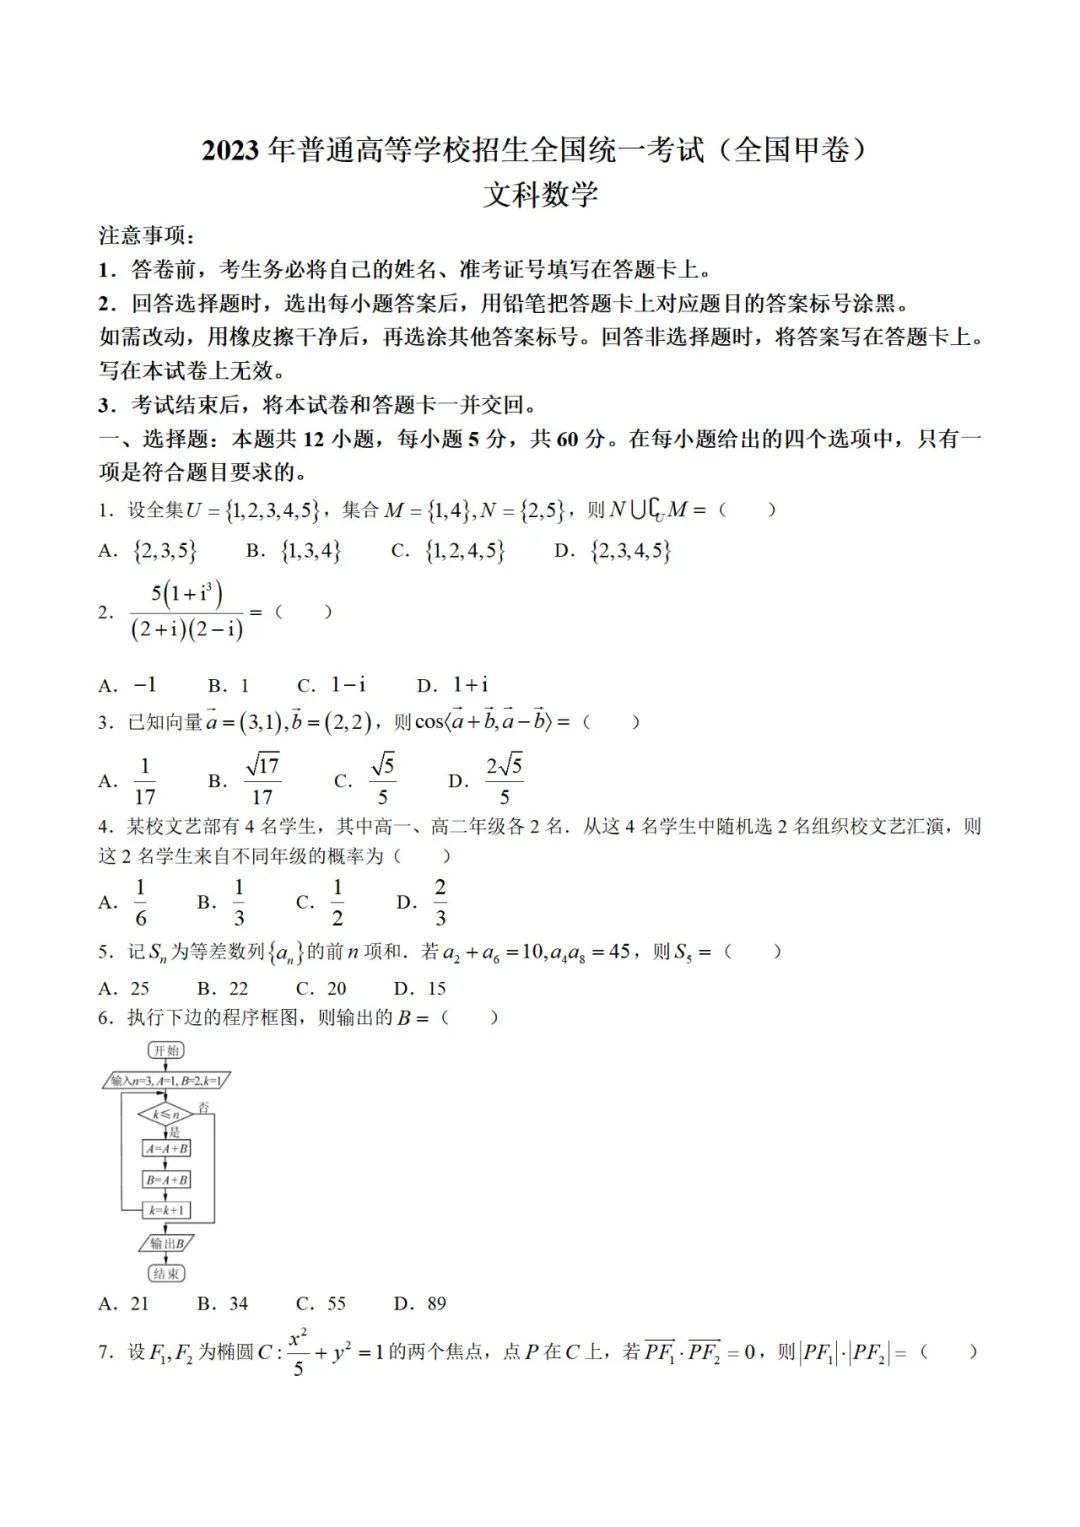 2023文科高考数学真题含答案(广西)